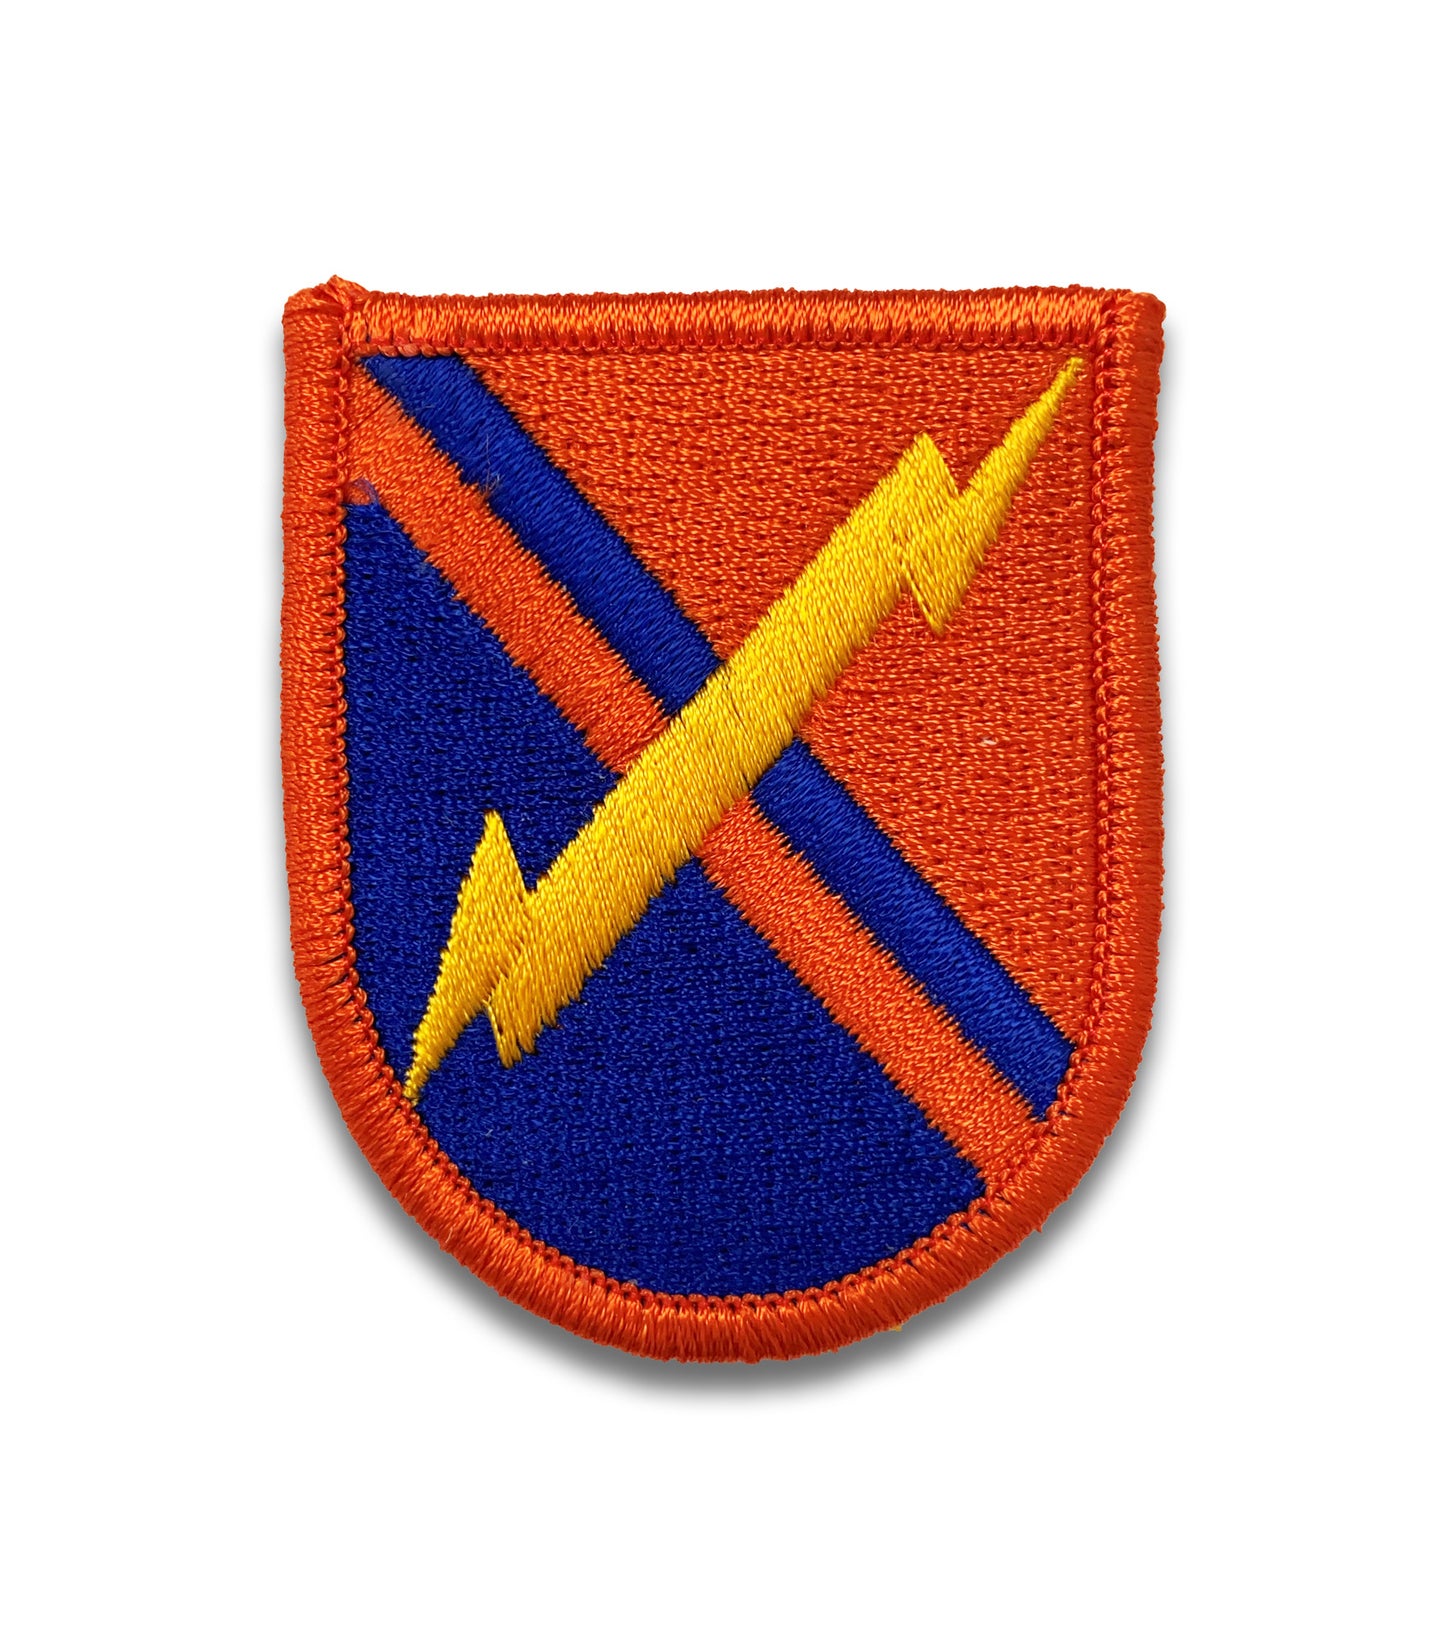 U.S. Army 51st Signal Flash (each)